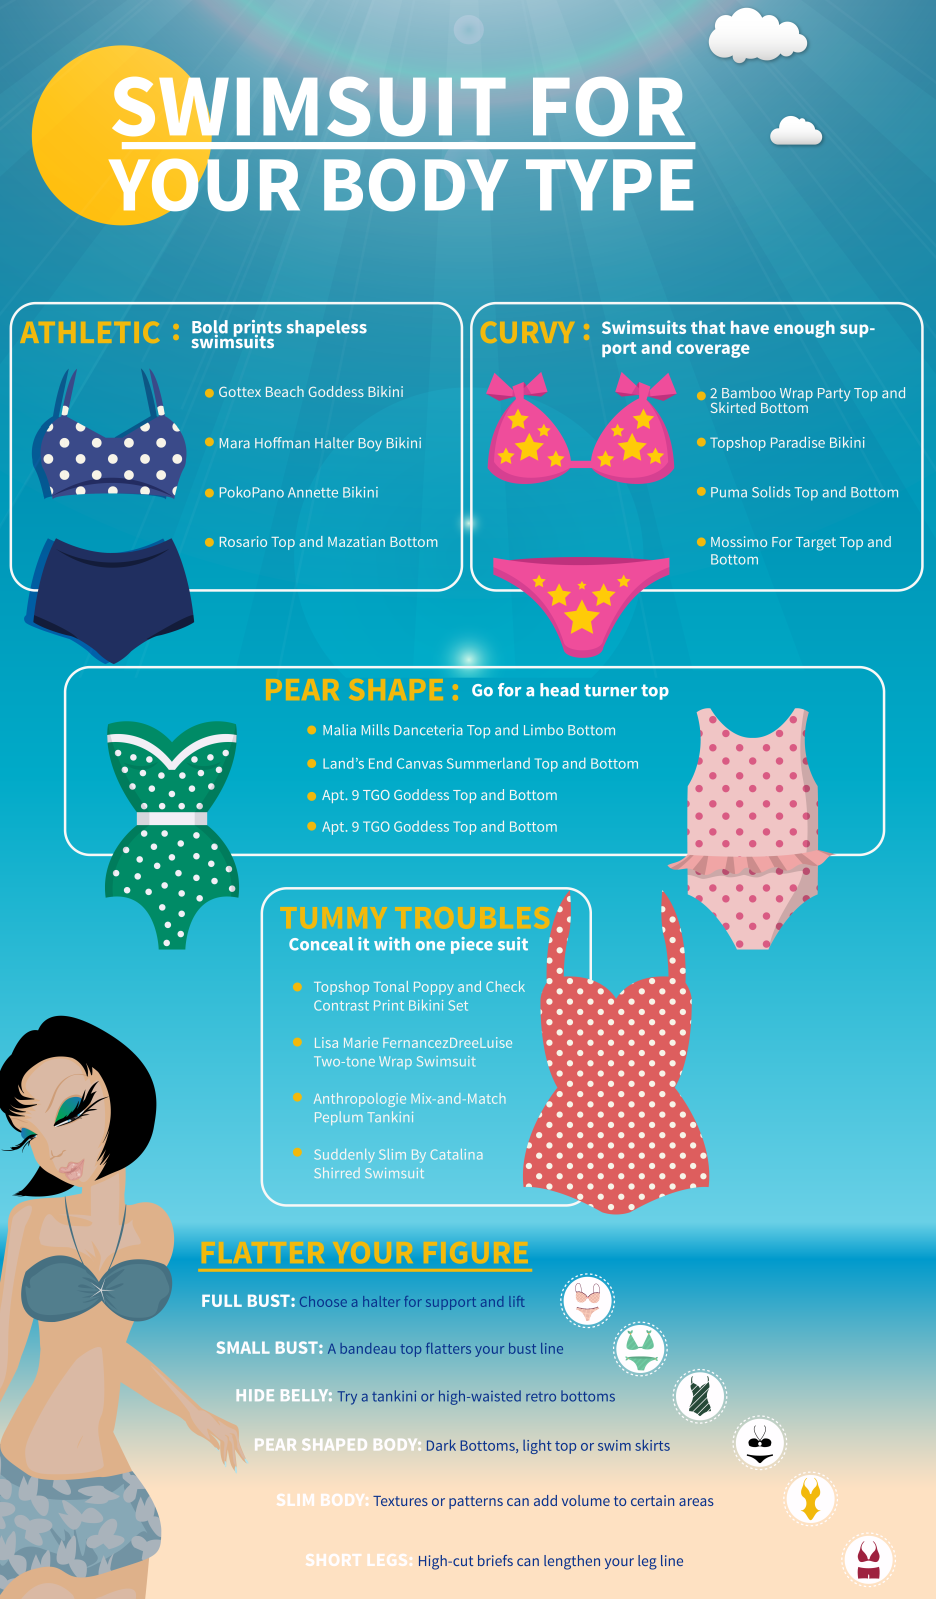 Infographic by bikinibodyguides.com